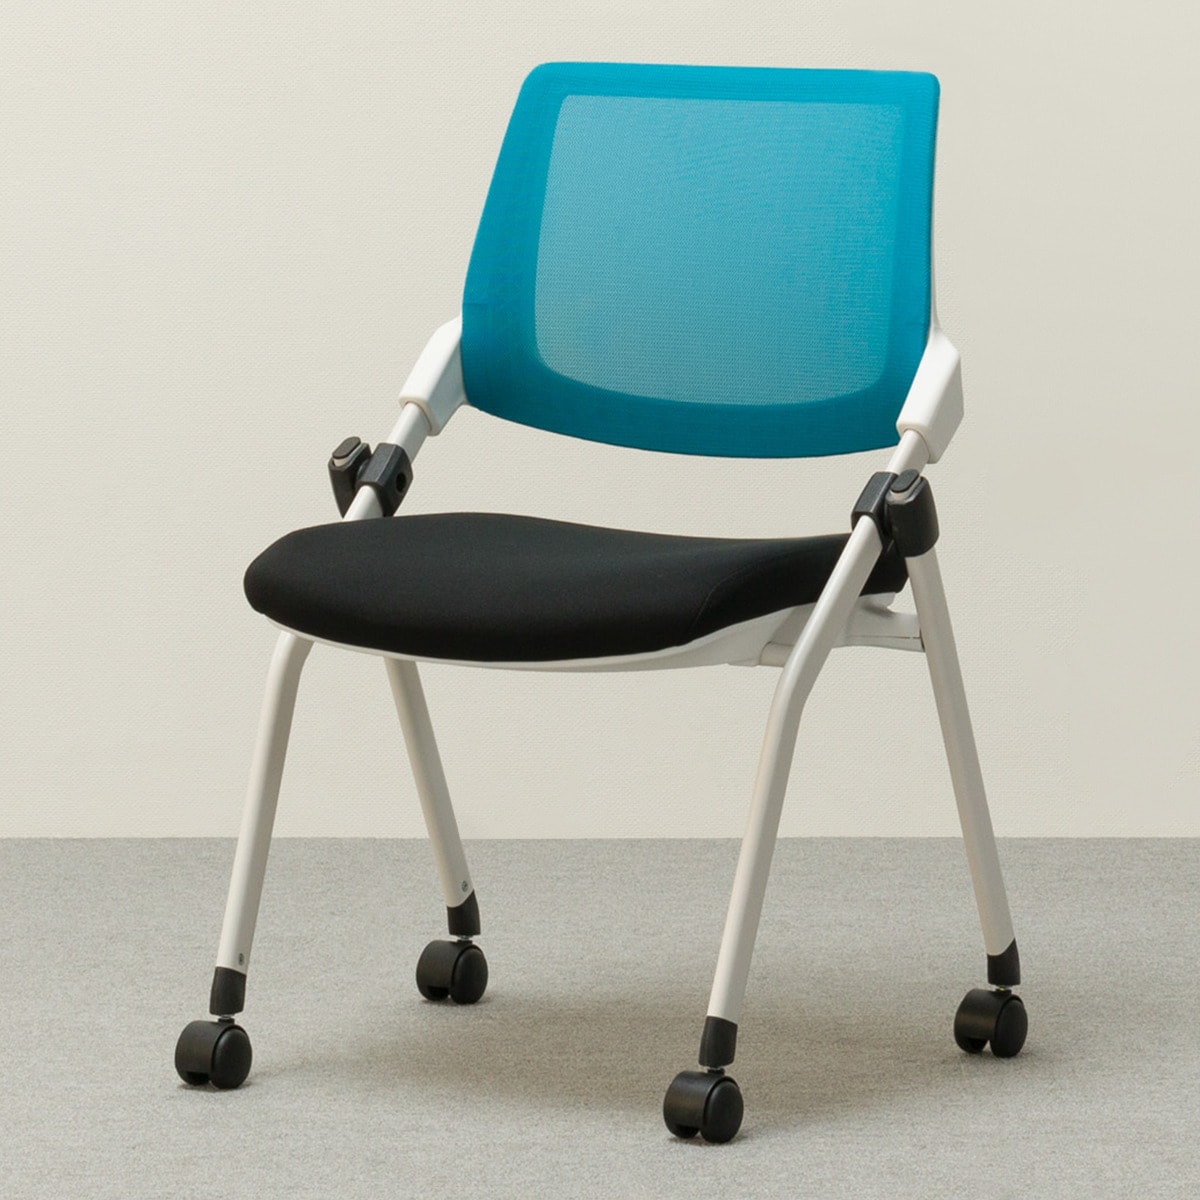 [幅56cm] 折りたたみチェア(X-16W BL) 法人 オフィス ワークチェア 事務用椅子 業務用   【1年保証】